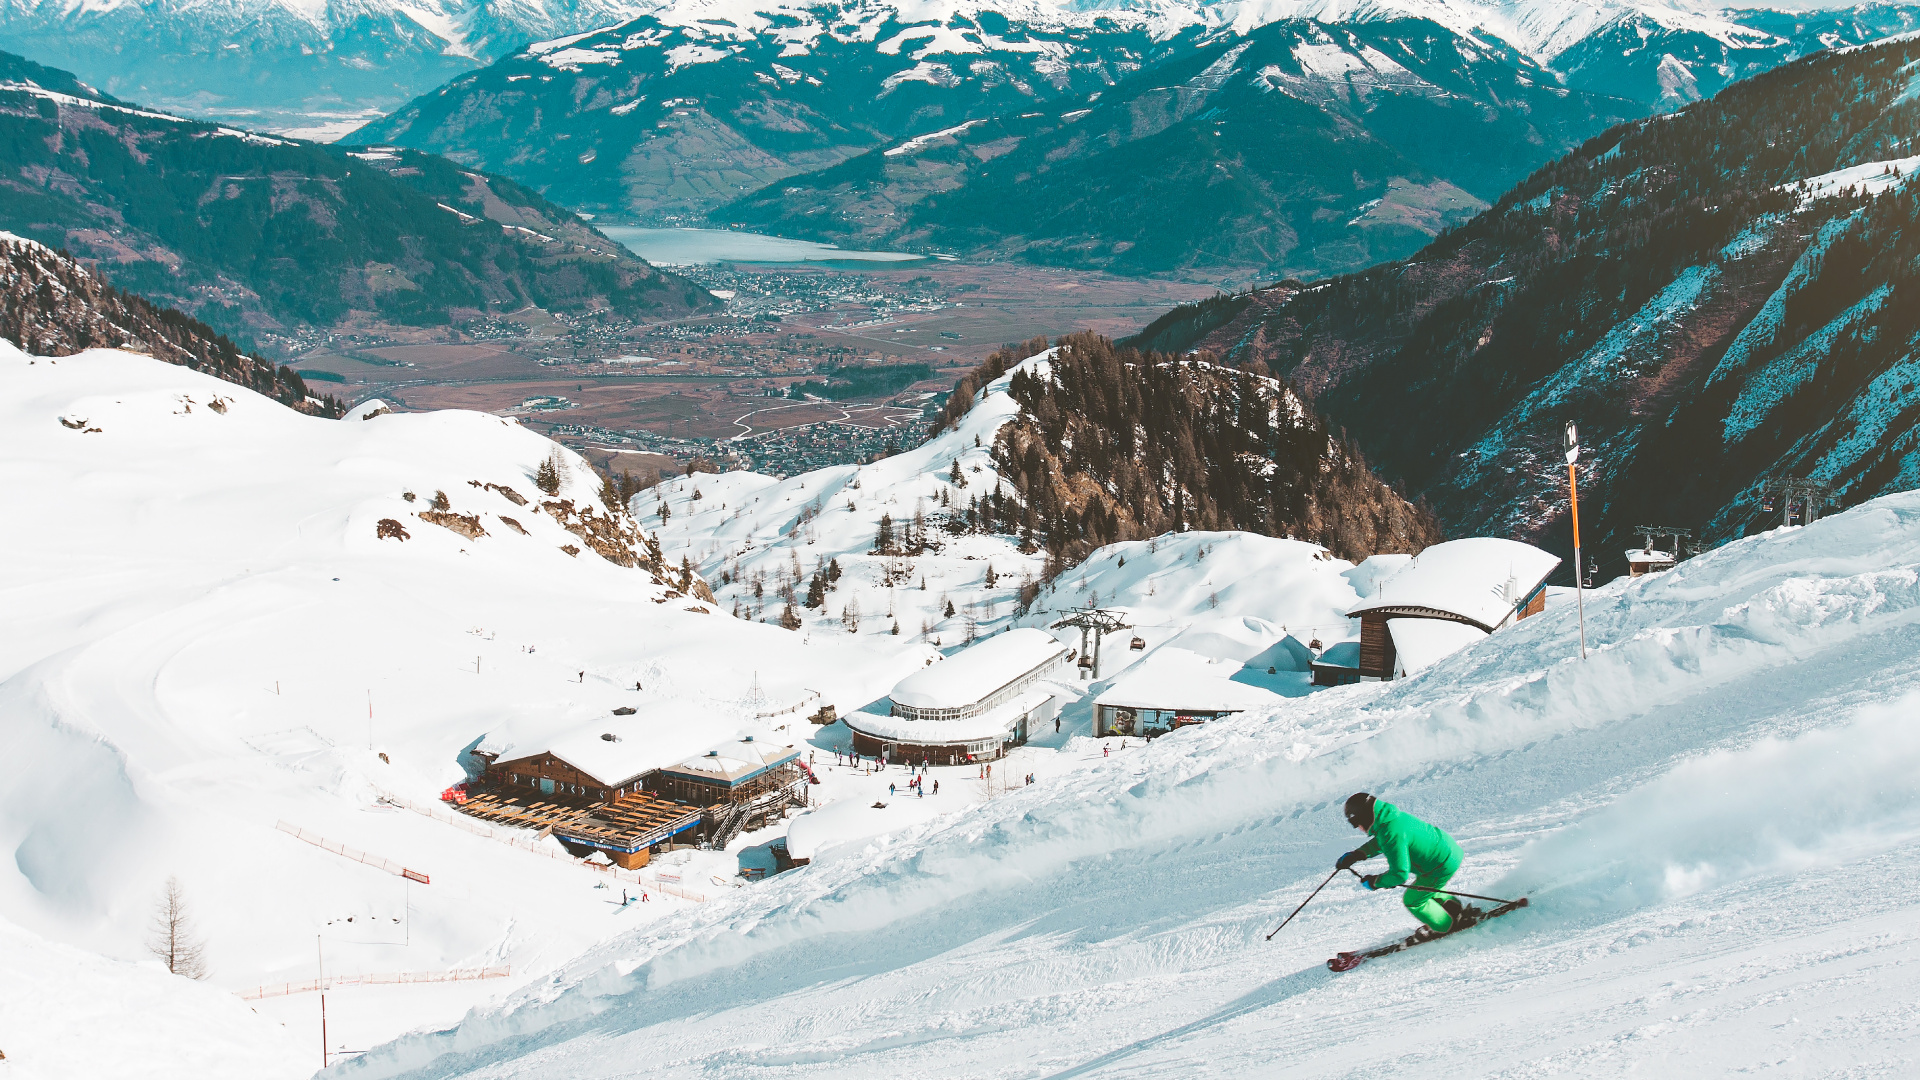 Skigebiet, Skifahren, Resort, Schnee, Bergigen Landschaftsformen. Wallpaper in 1920x1080 Resolution